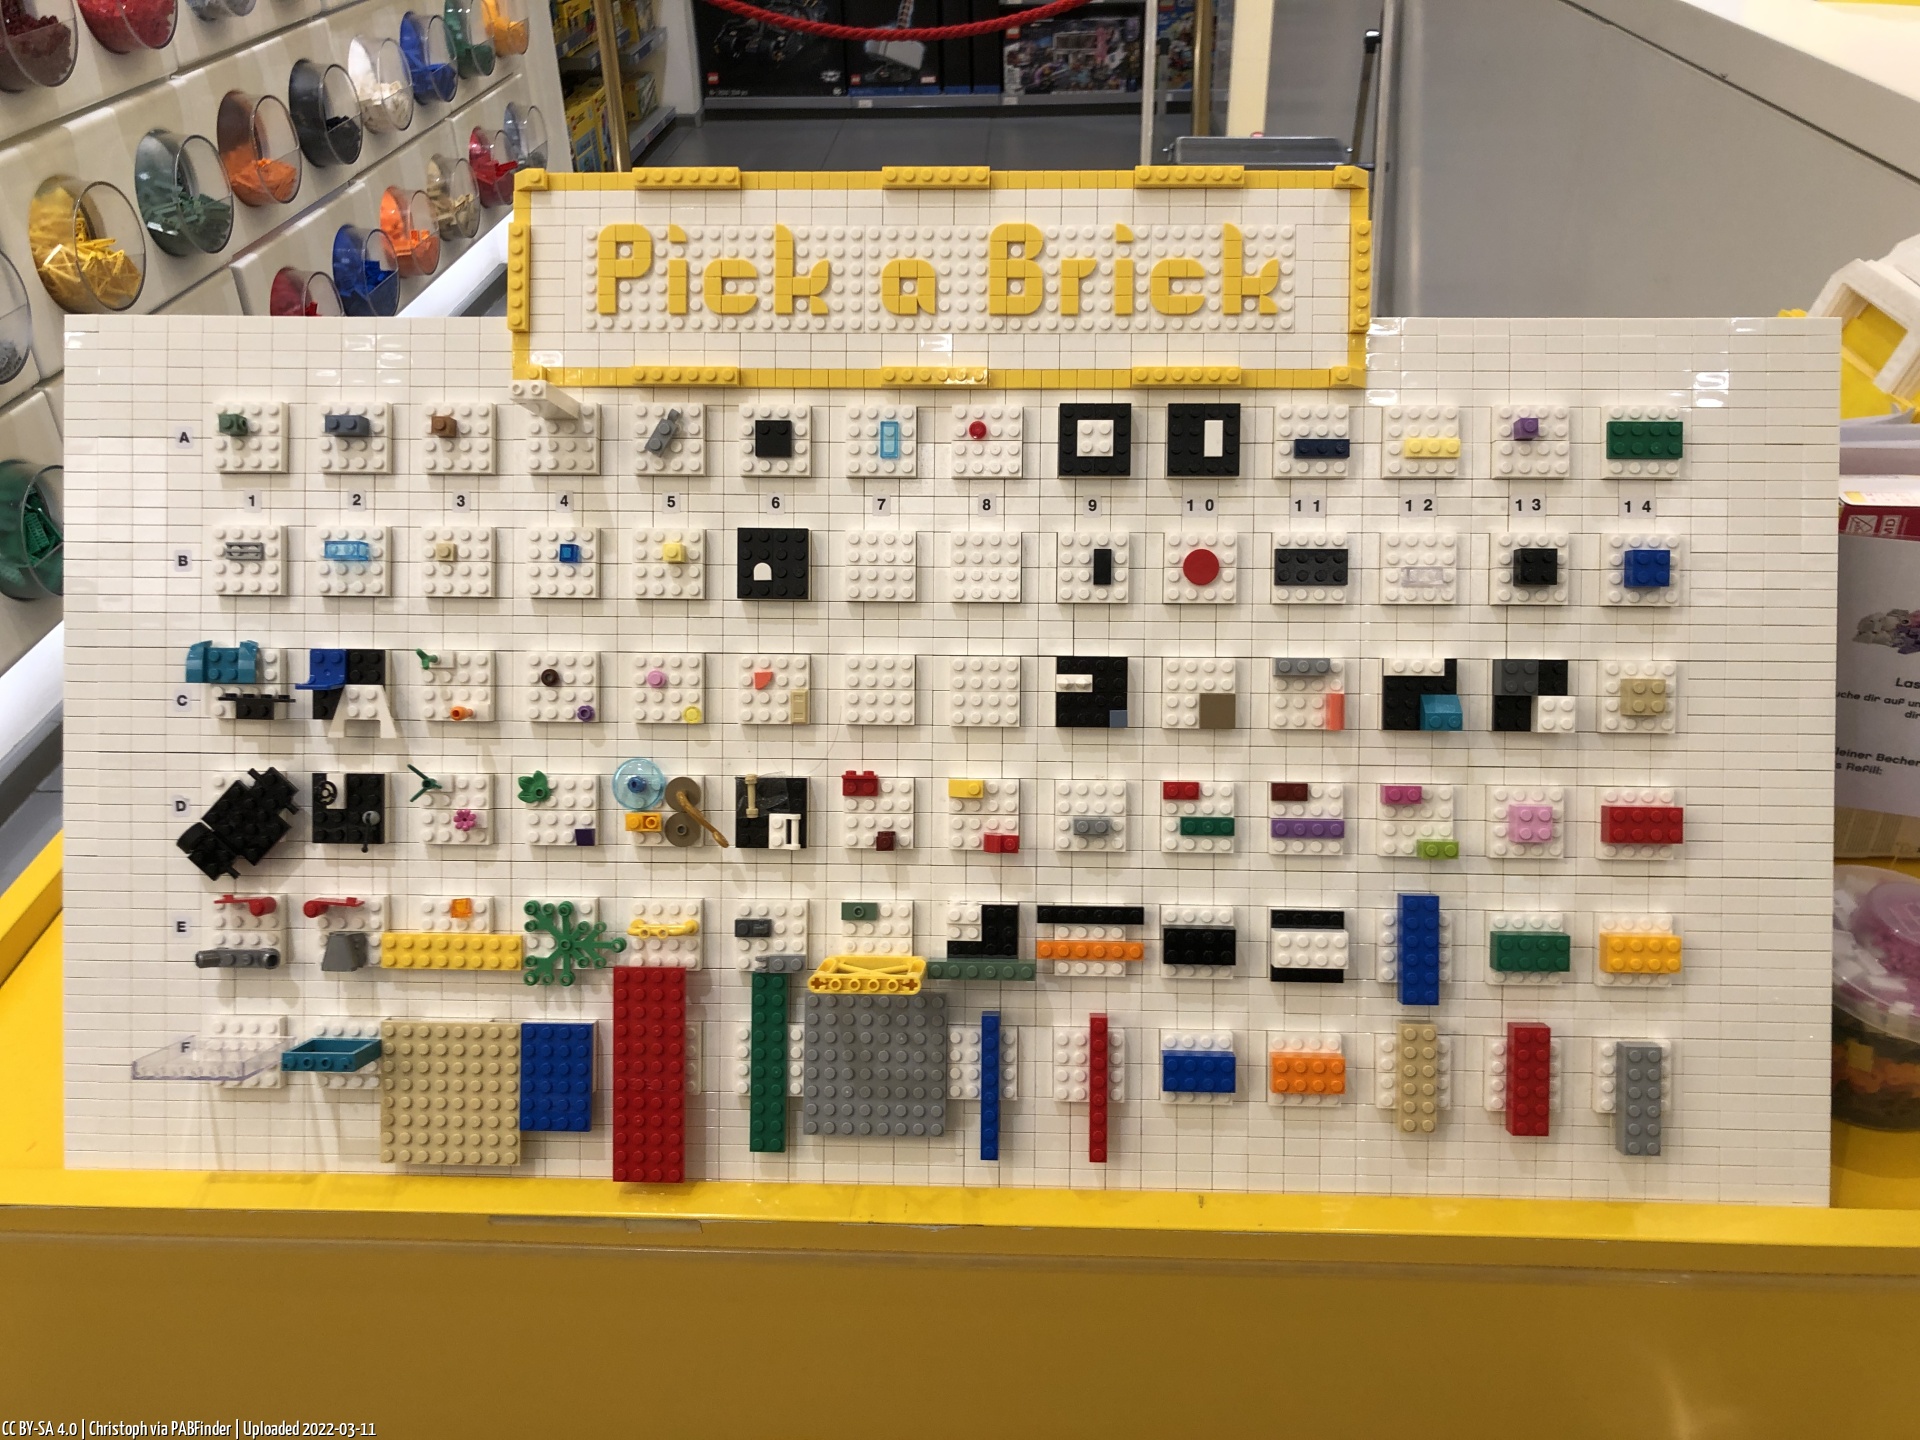 Pick a Brick Hamburg (Christoph am 3/11/22, 7:47:00 PM)